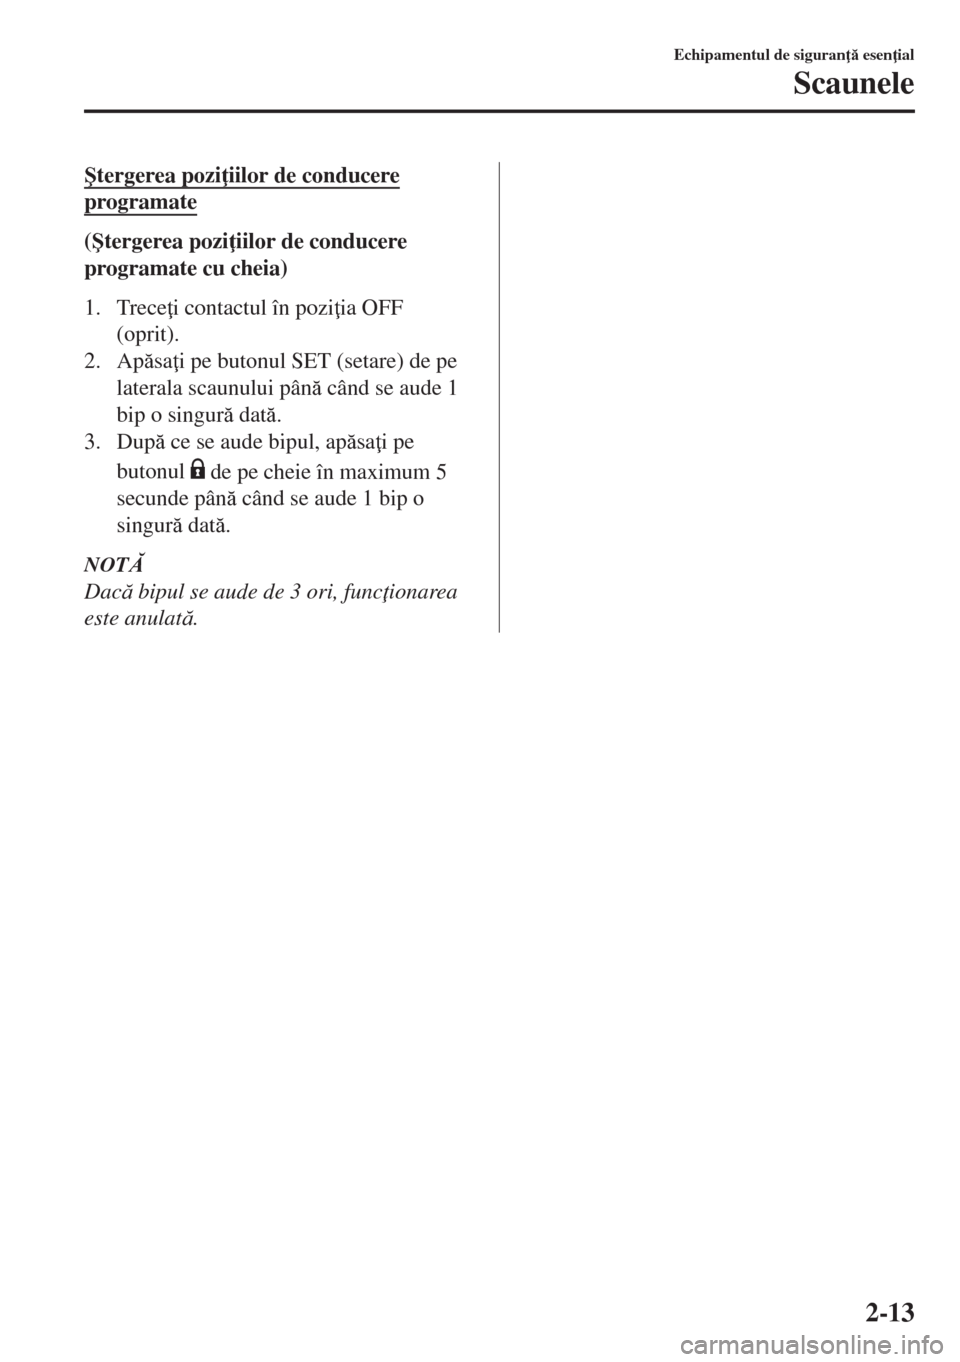 MAZDA MODEL 6 2018  Manualul de utilizare (in Romanian) �ùtergerea pozi iilor de conducere
programate
(�ùtergerea pozi iilor de conducere
programate cu cheia)
1. Trece i contactul în pozi ia OFF
(oprit).
2. Apsa i pe butonul SET (setare) de pe
la